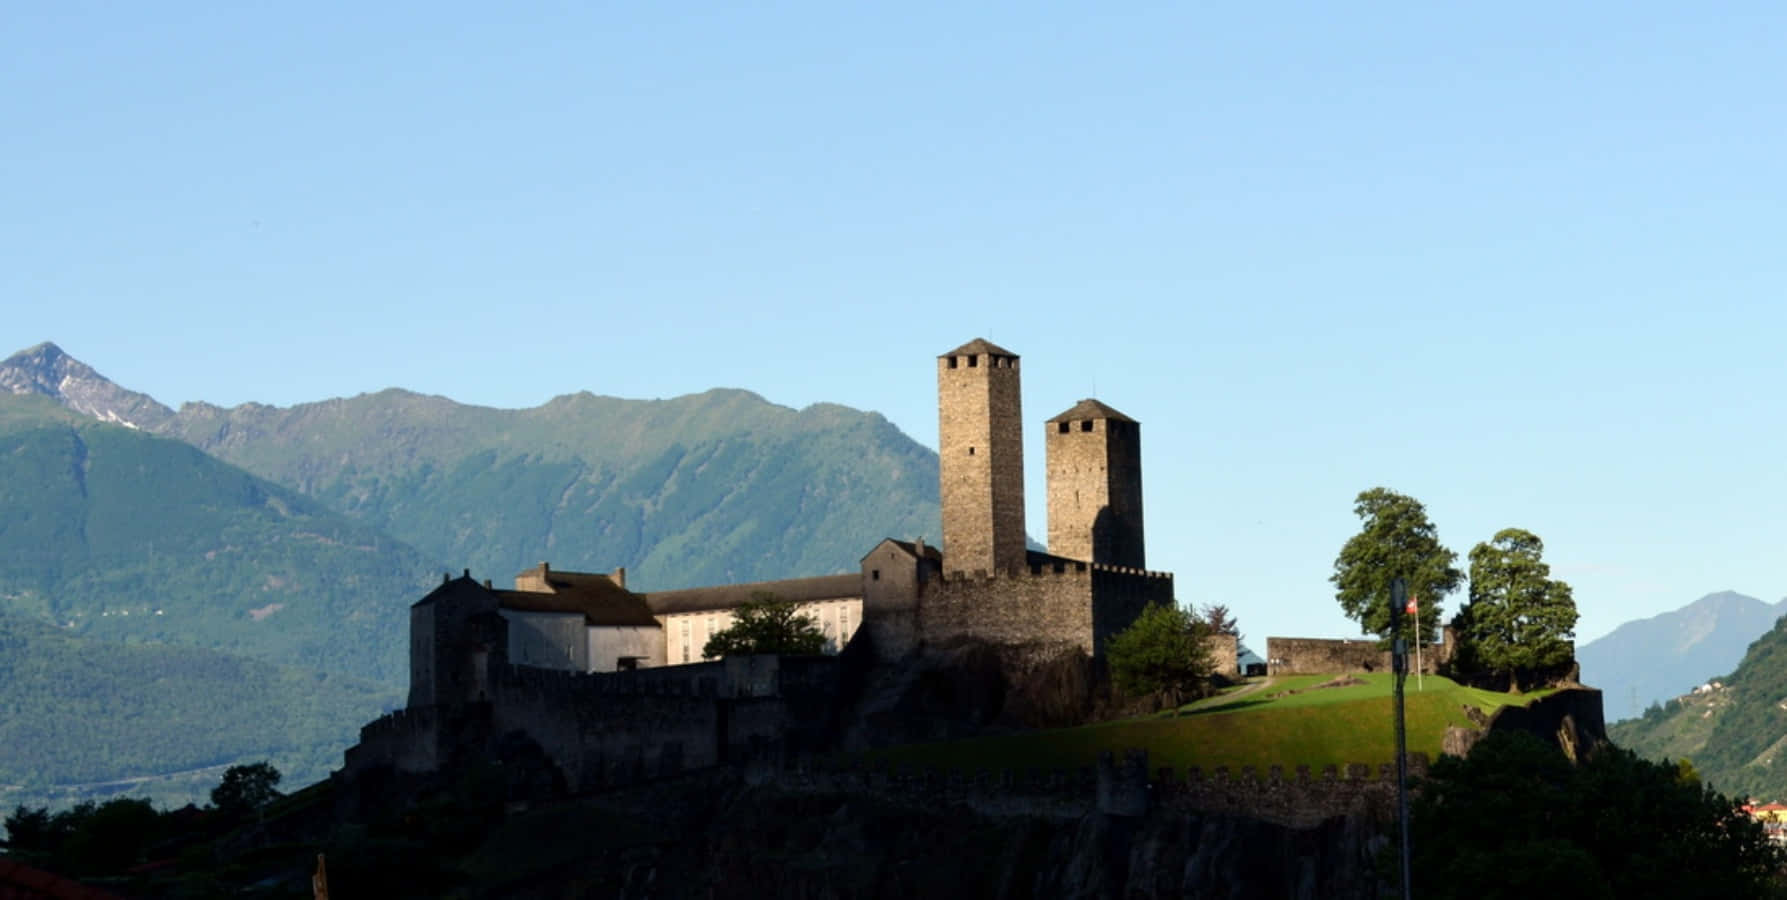 Majestic View Of The Historic Castelgrande In Bellinzona, Switzerland Wallpaper